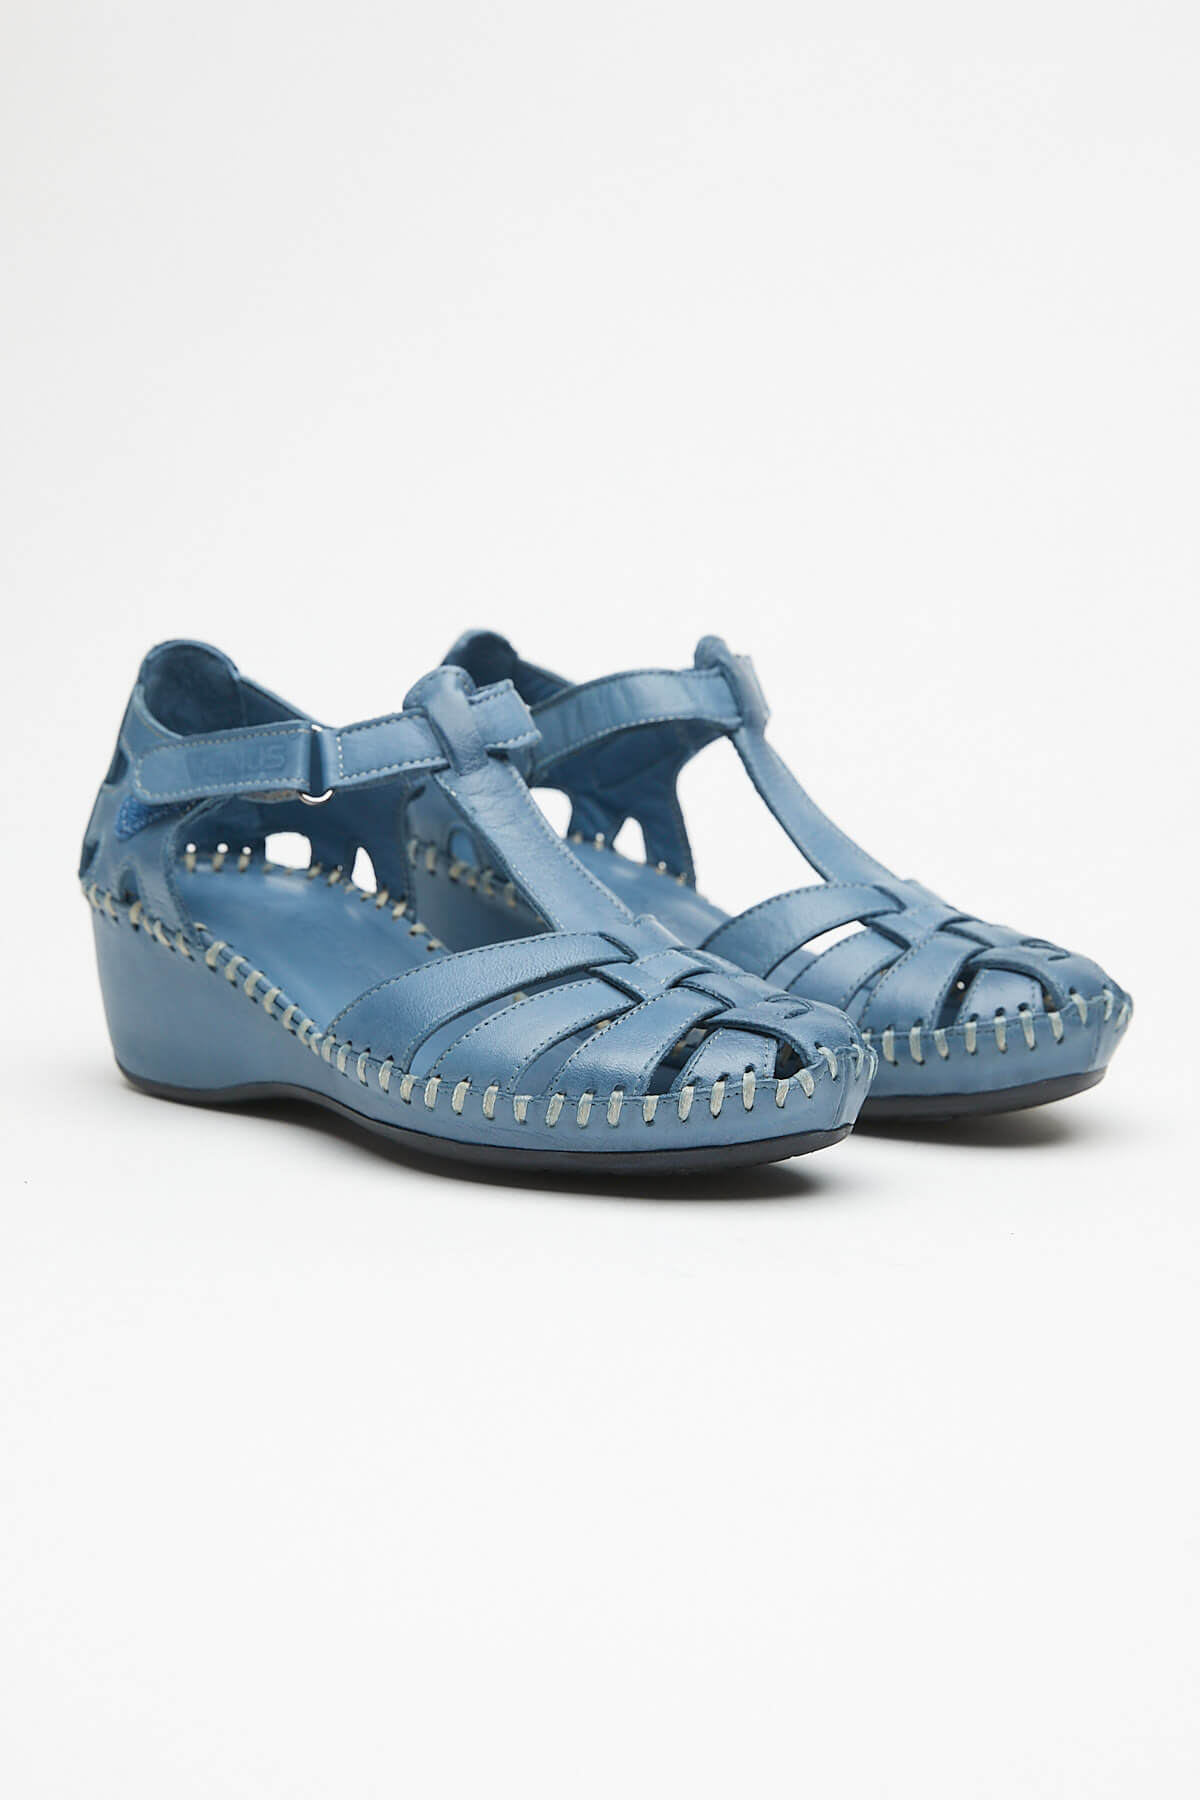 Kadın Comfort Deri Sandalet Mavi 18791382 - Thumbnail